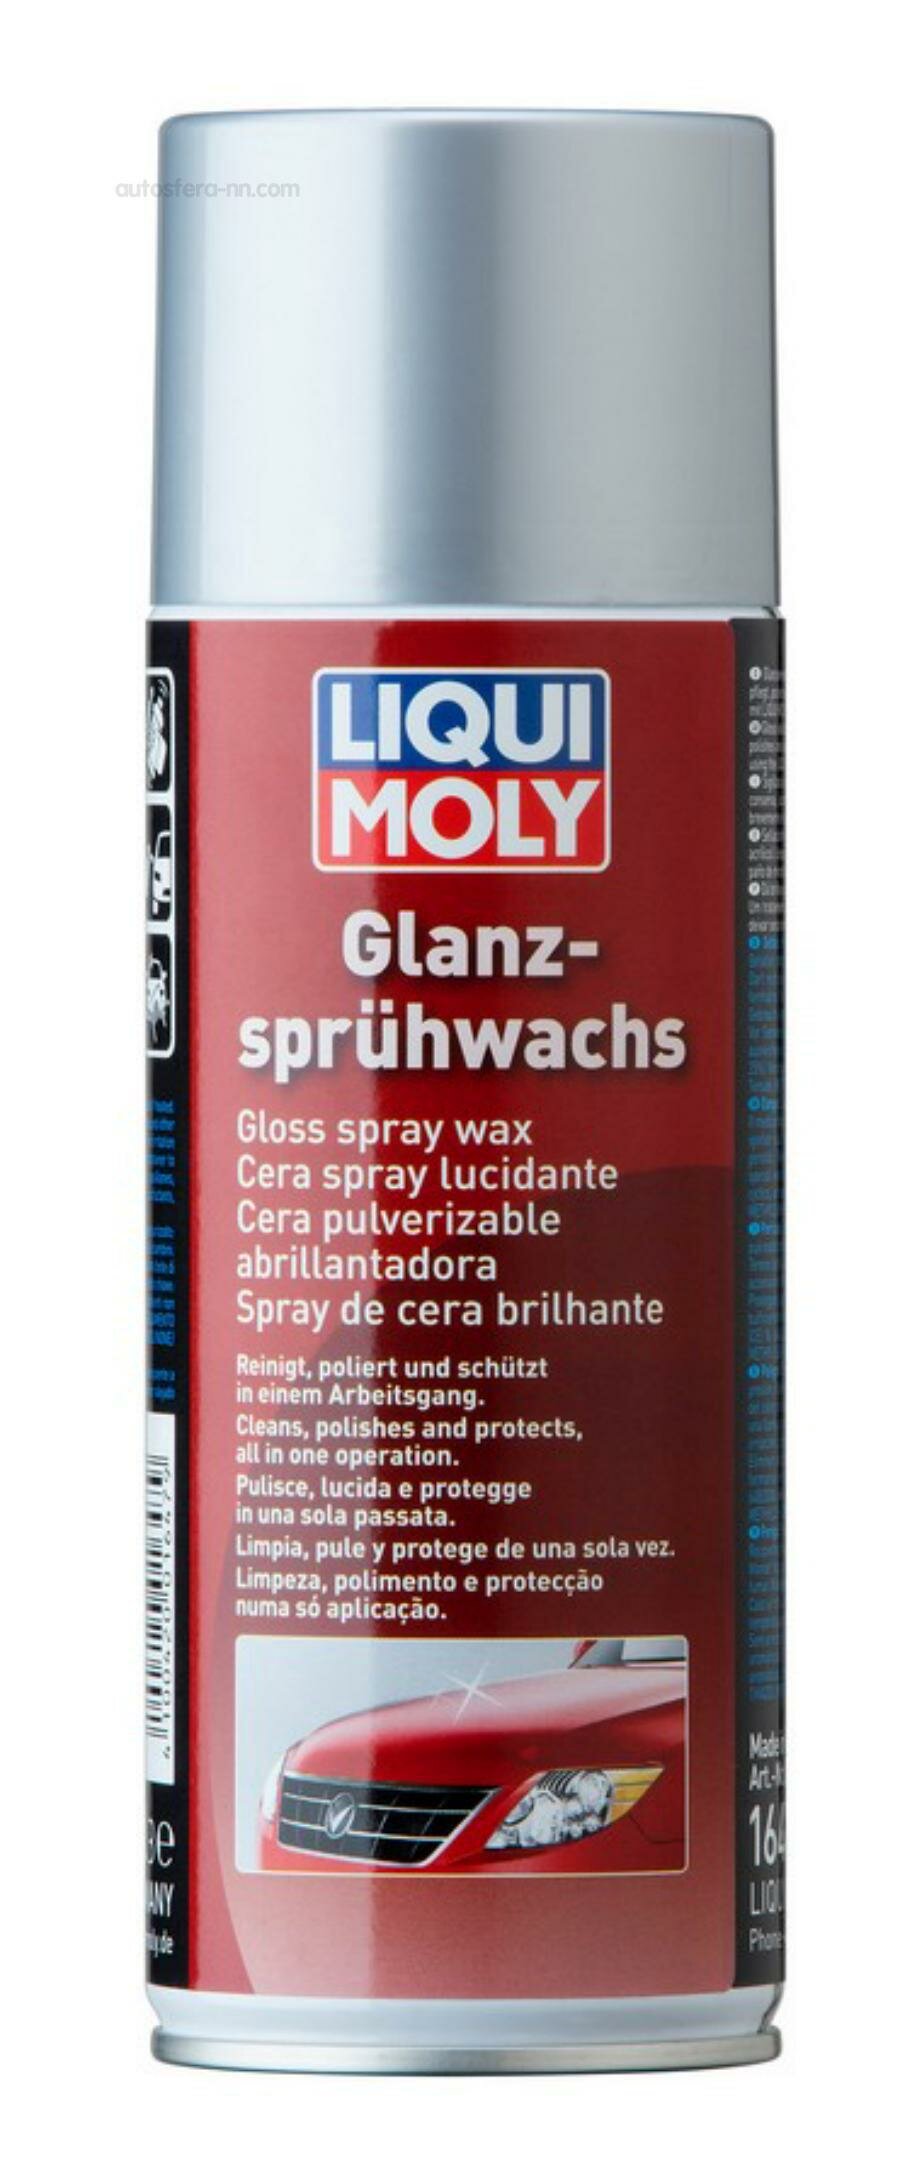 Жидкий воск LIQUI MOLY Glanz-Spruhwachs 1647, 0,4 л - фото №4